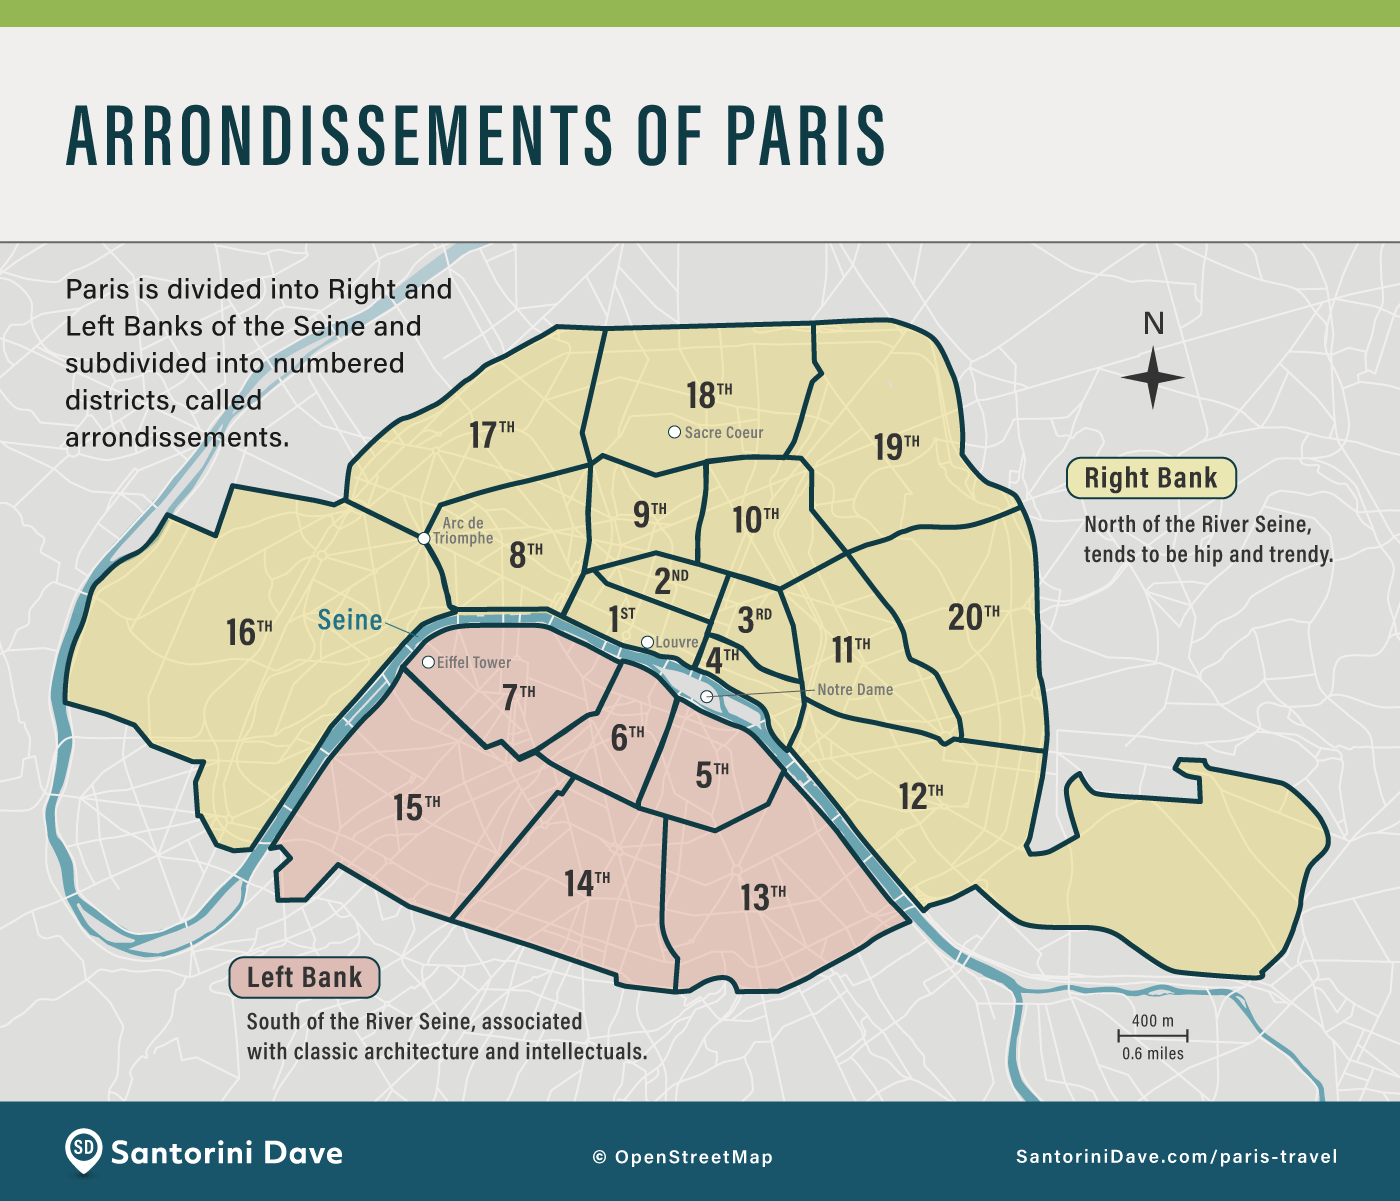 Map showing the arrondissements of Paris